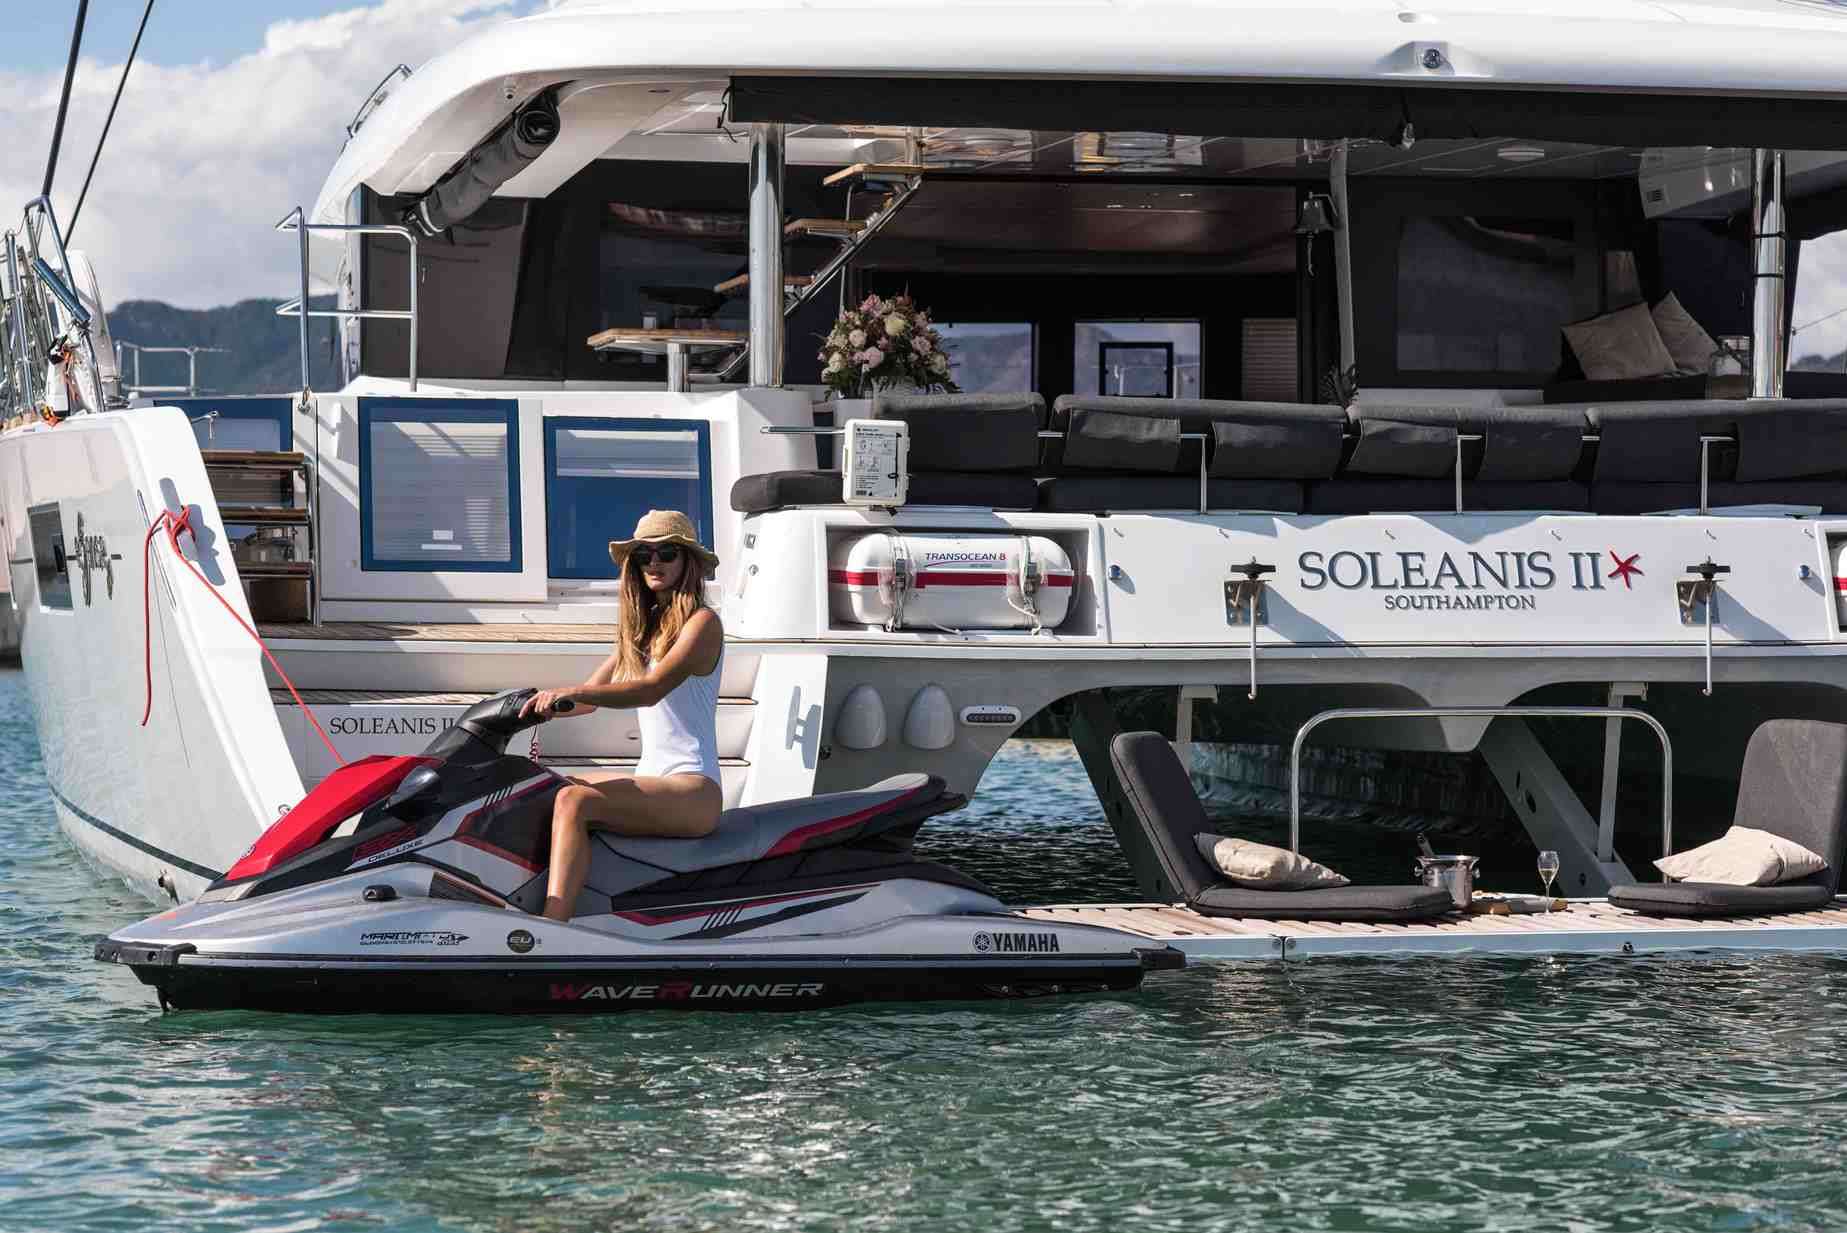 Soleanis II - Yacht Charter Lavagna & Boat hire in Fr. Riviera & Tyrrhenian Sea 4